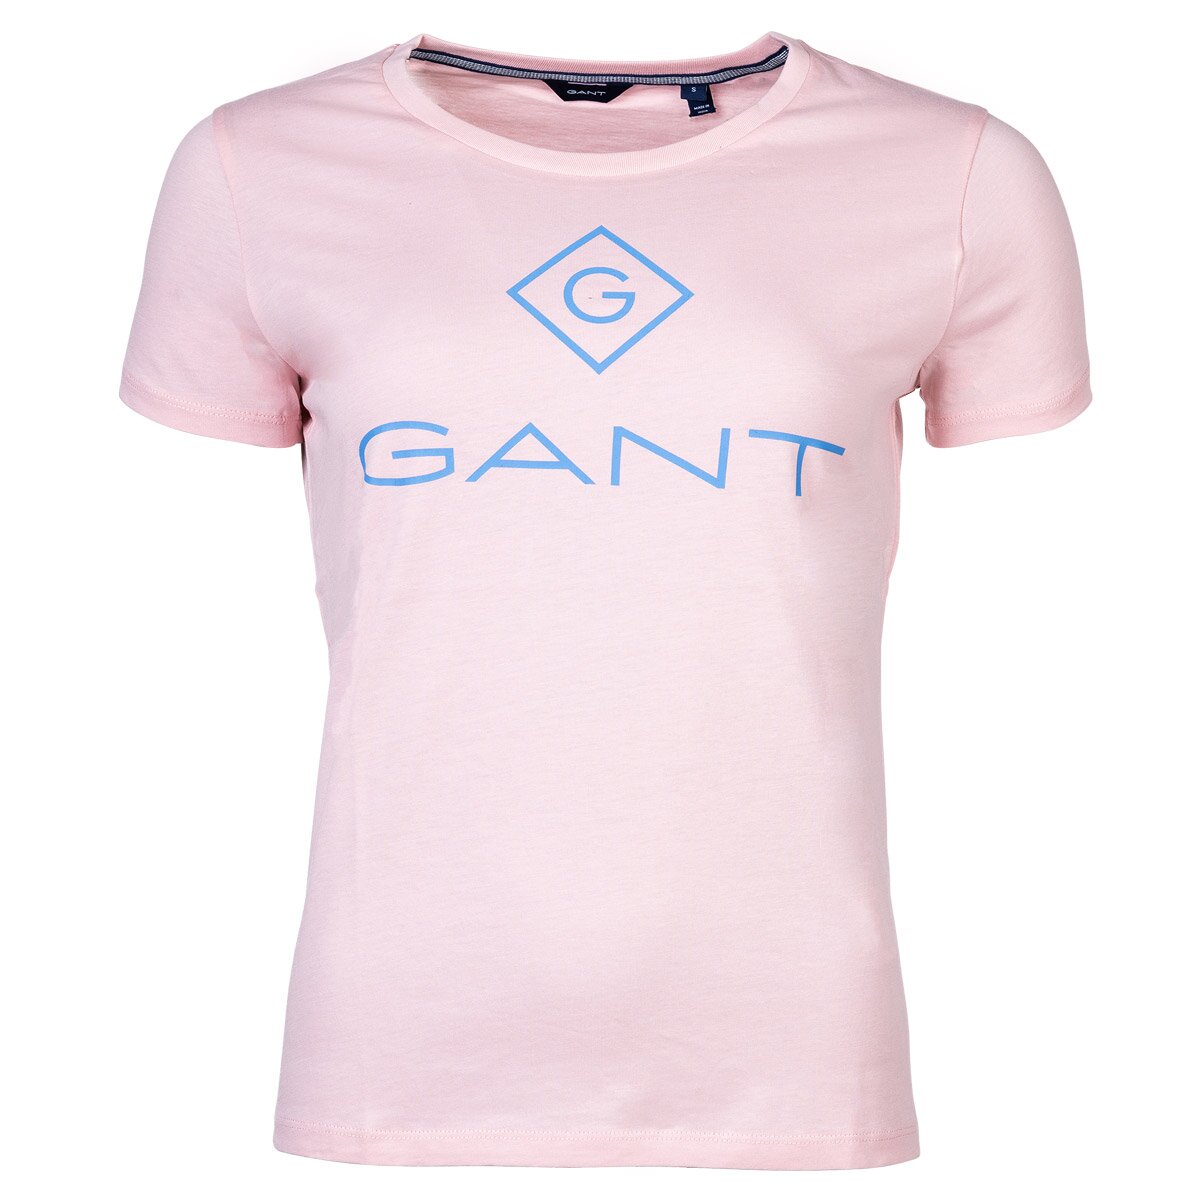 GANT ladies T-shirt - D1 Color Lock Up T-shirt, round neck, short sle